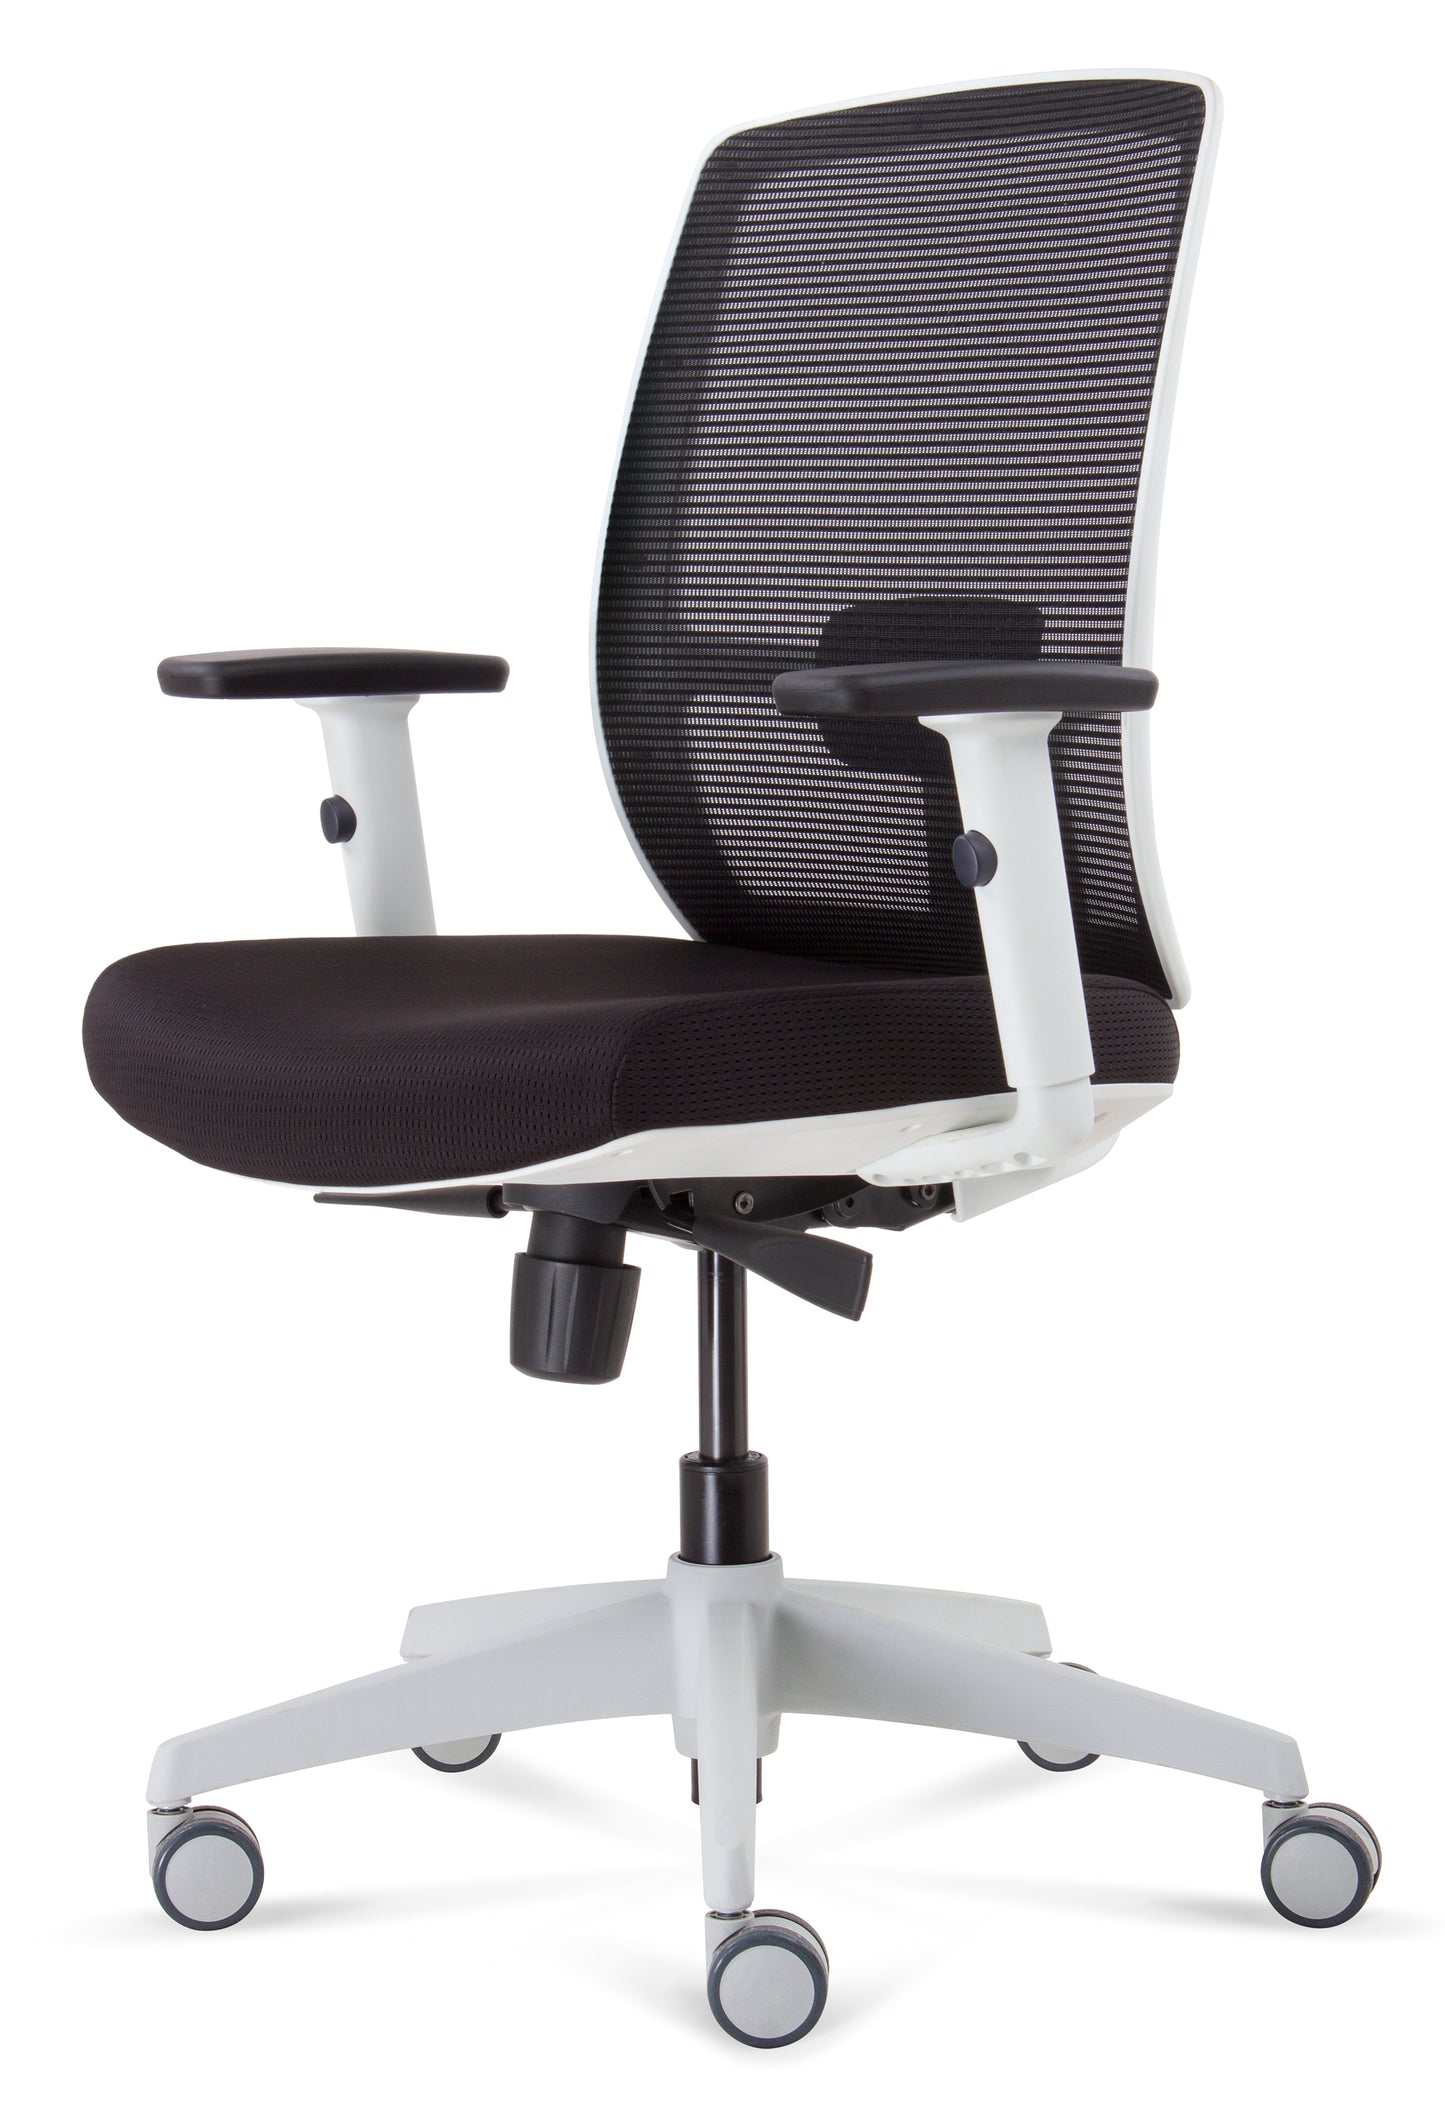 ErgoLuxe WM Office Chair